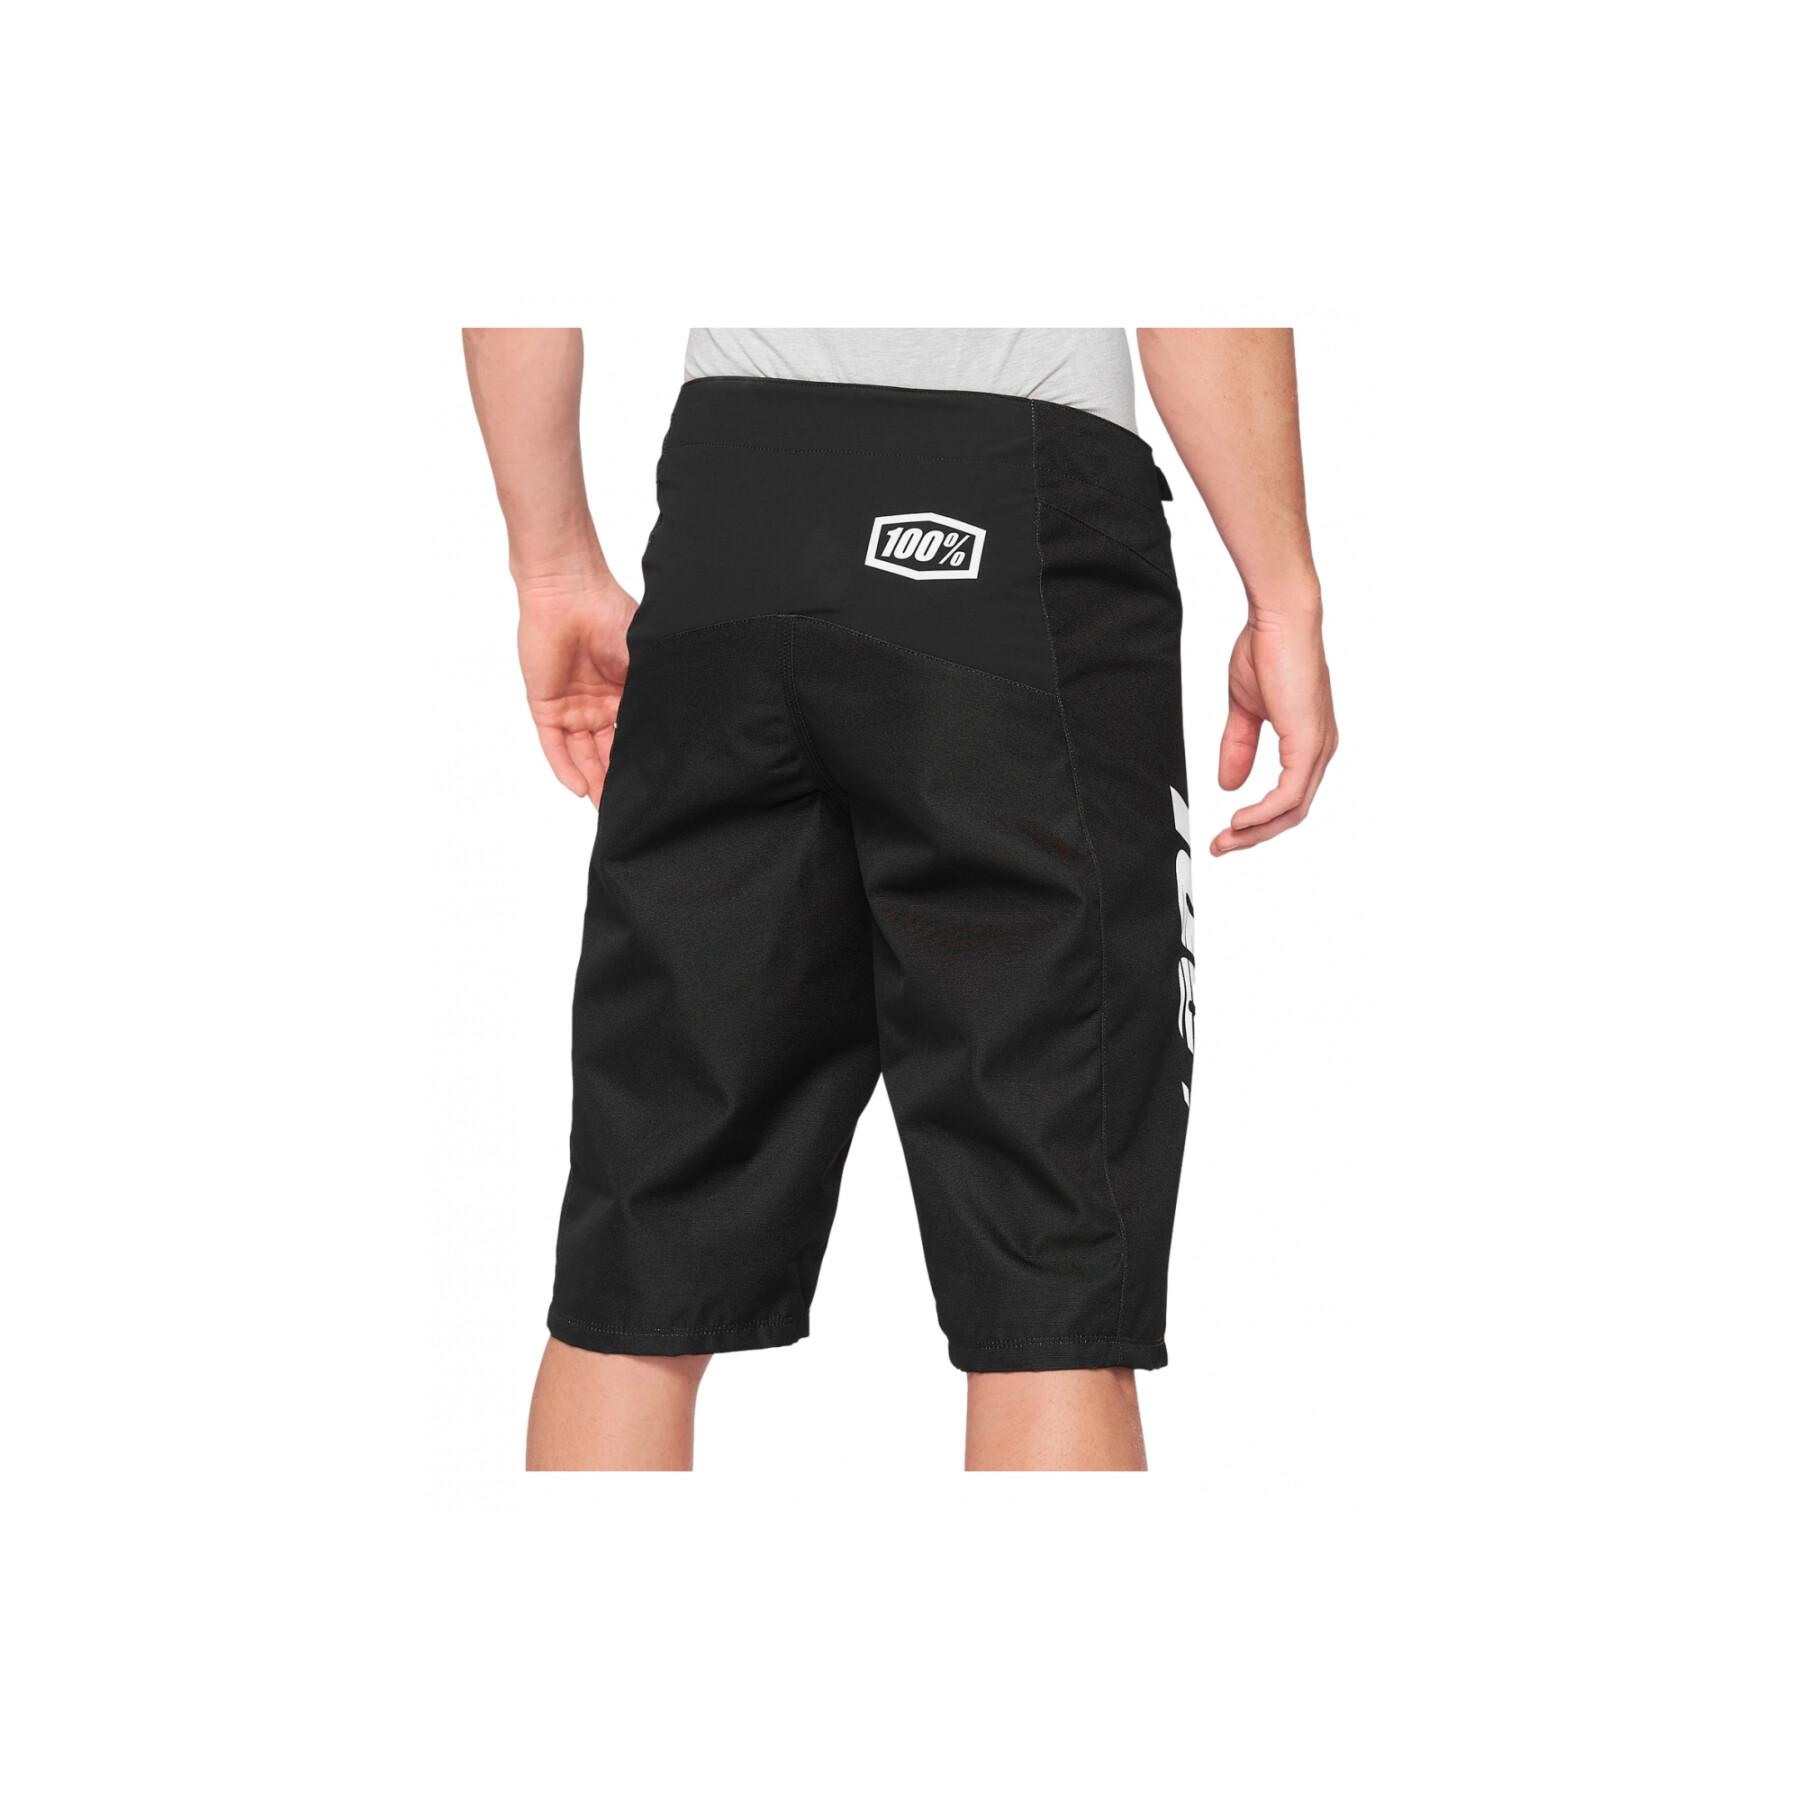 Children's shorts 100% R-Core Sp21